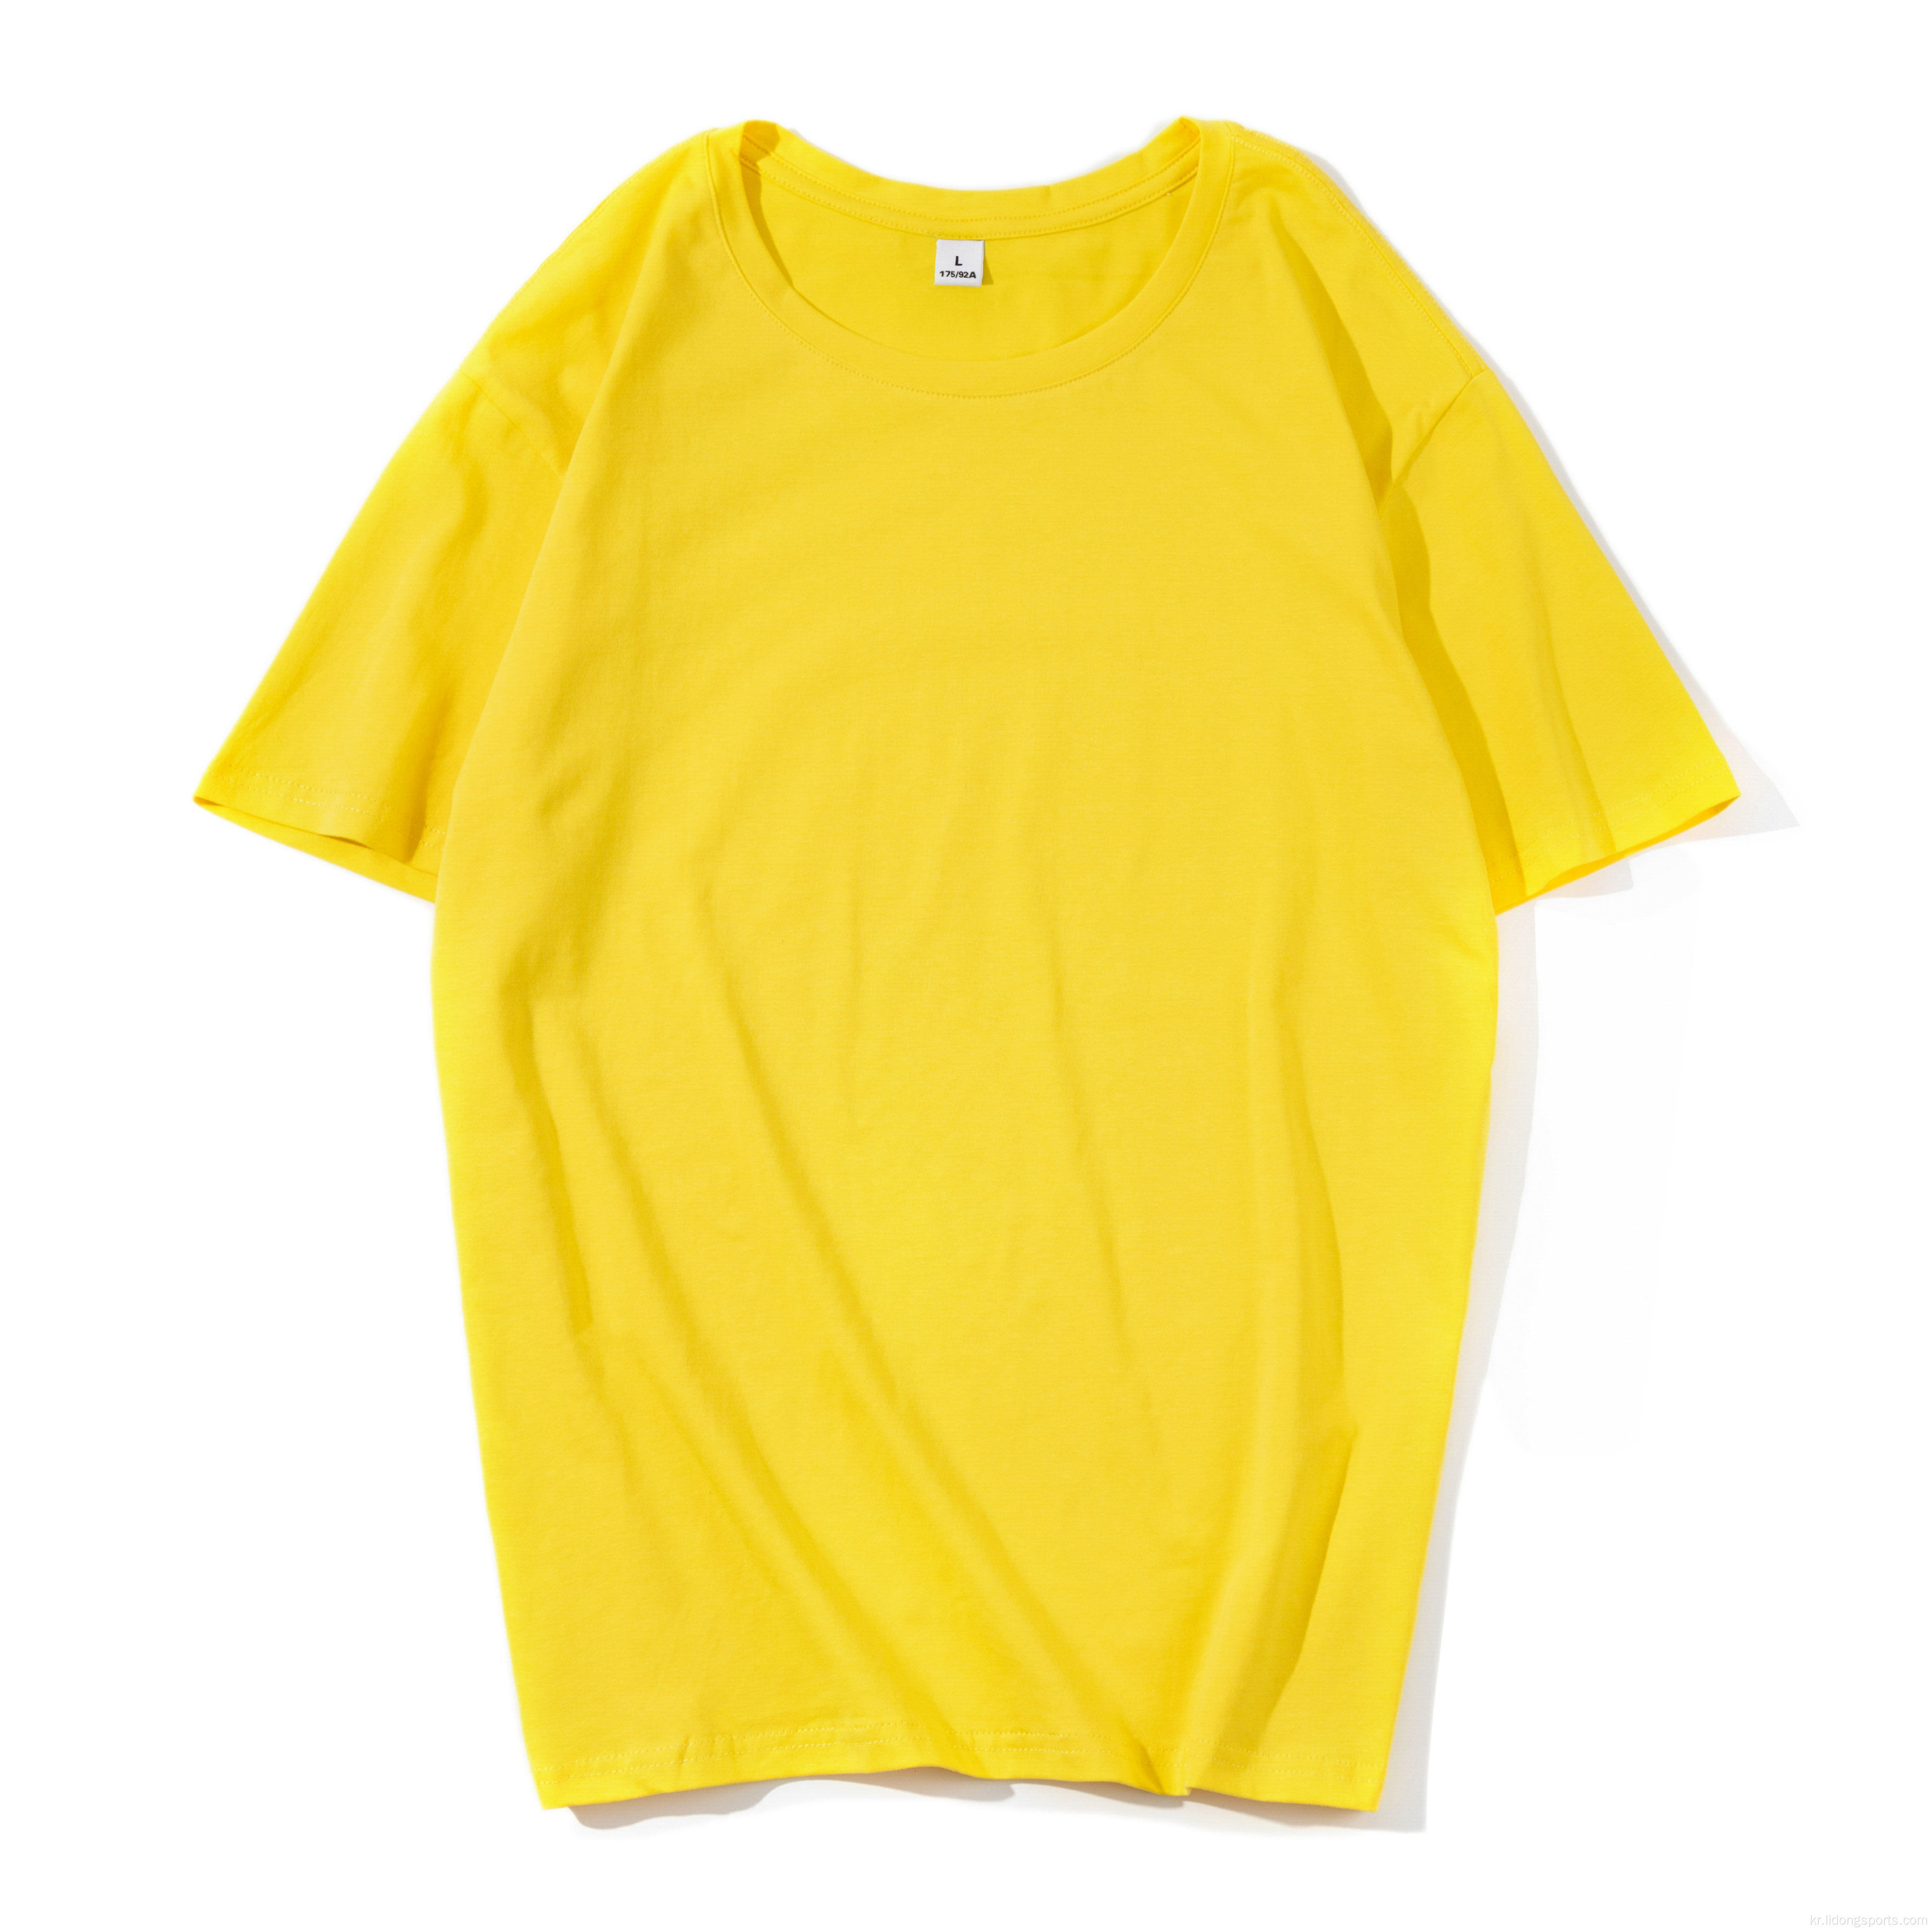 새로운 스타일의 유니즌 평범한 면화 패션 남성 티셔츠